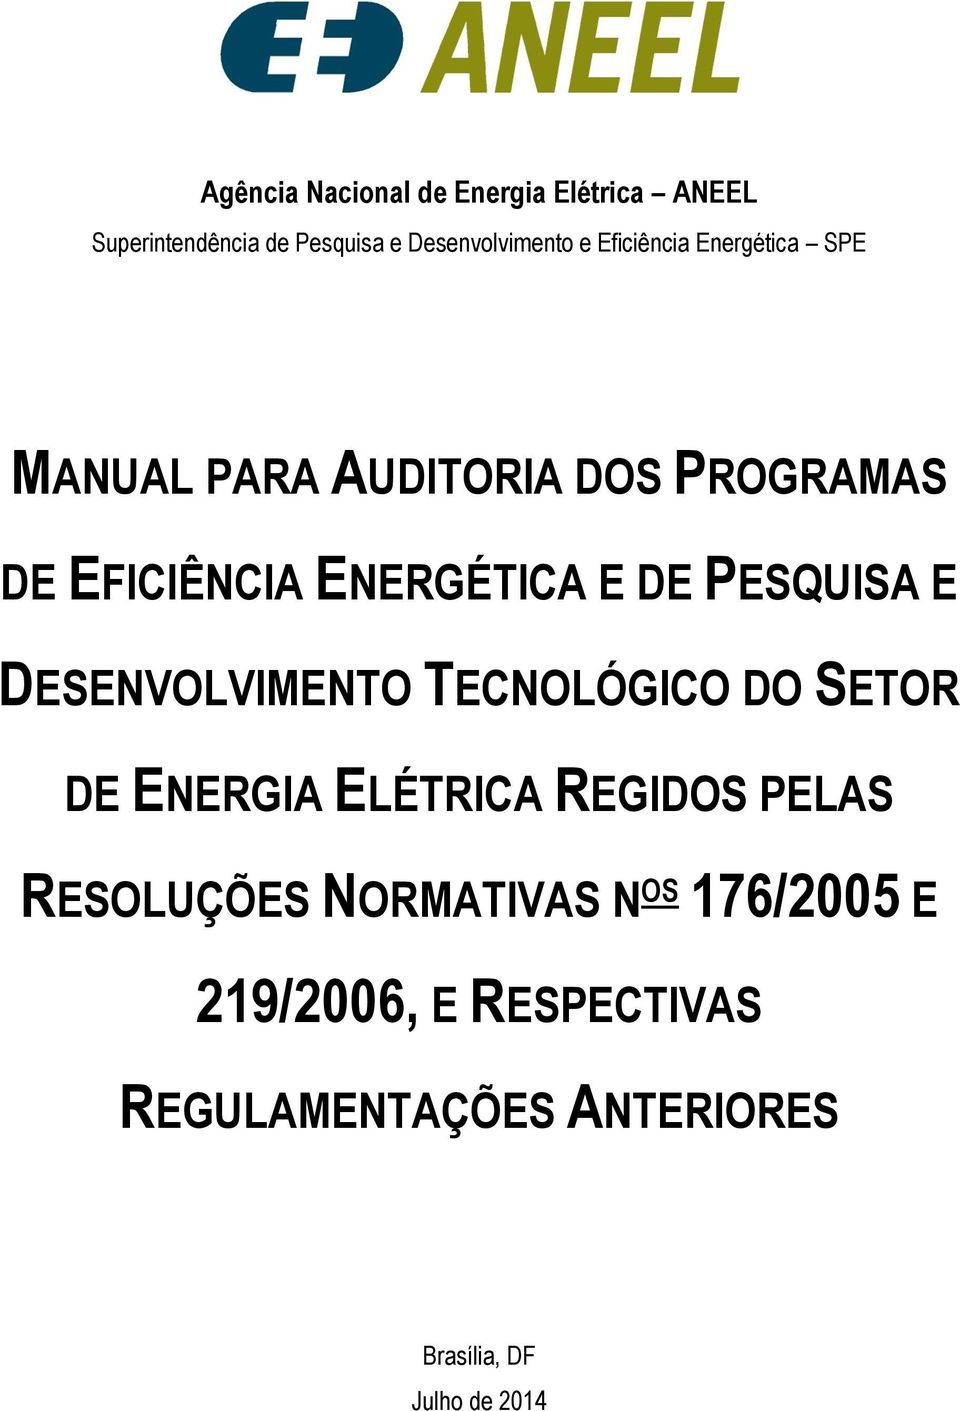 PESQUISA E DESENVOLVIMENTO TECNOLÓGICO DO SETOR DE ENERGIA ELÉTRICA REGIDOS PELAS RESOLUÇÕES